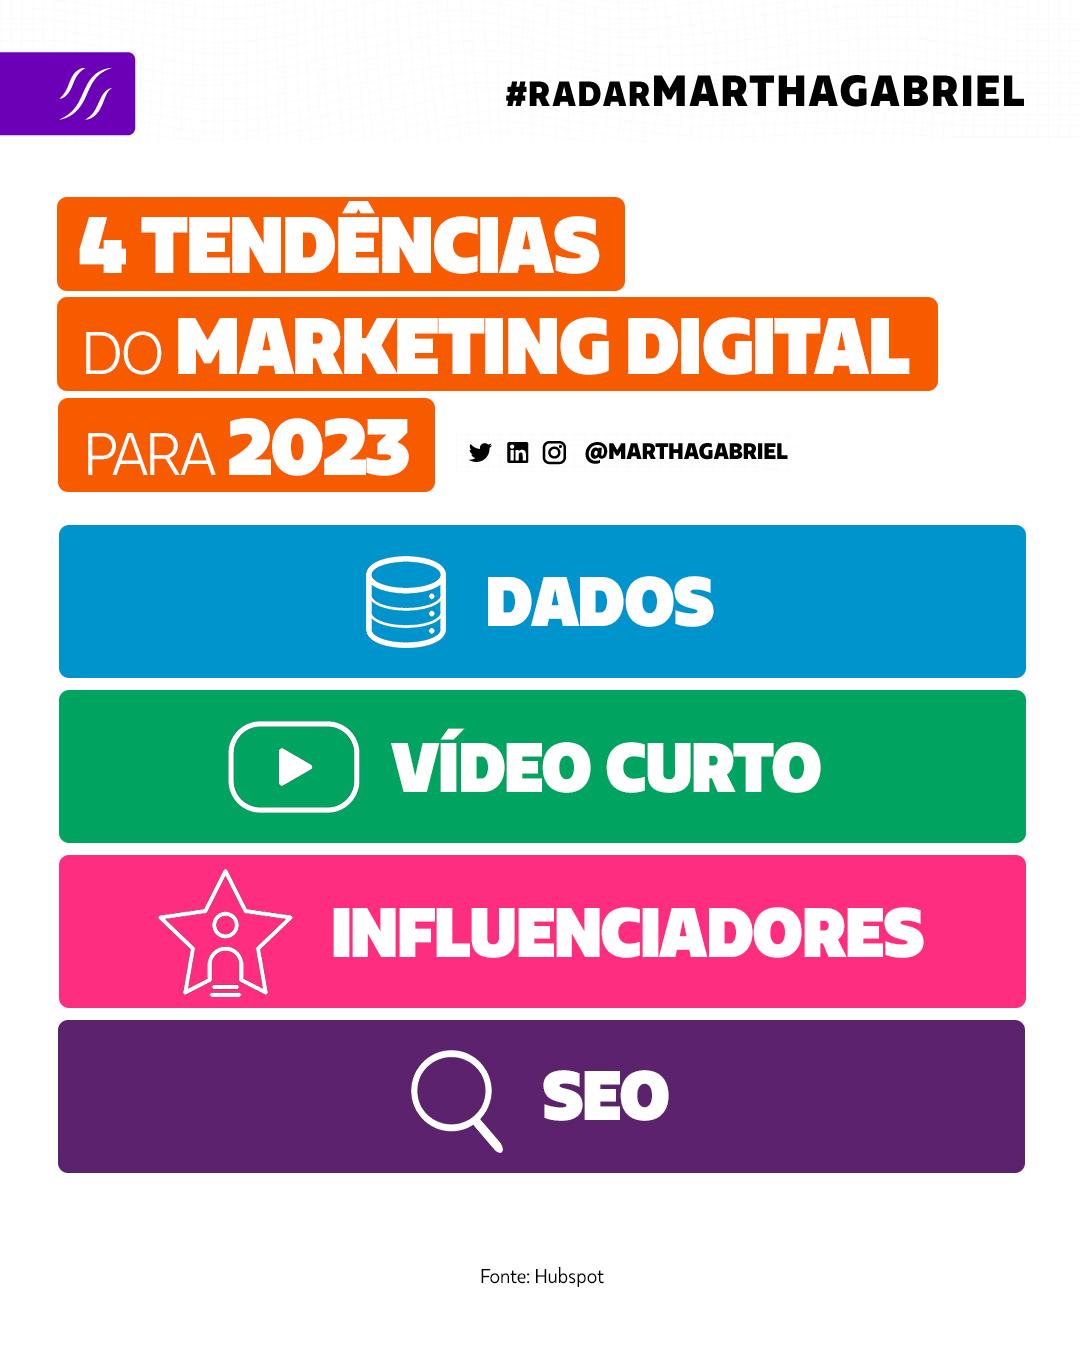 4 tendências do marketing digital para 2023